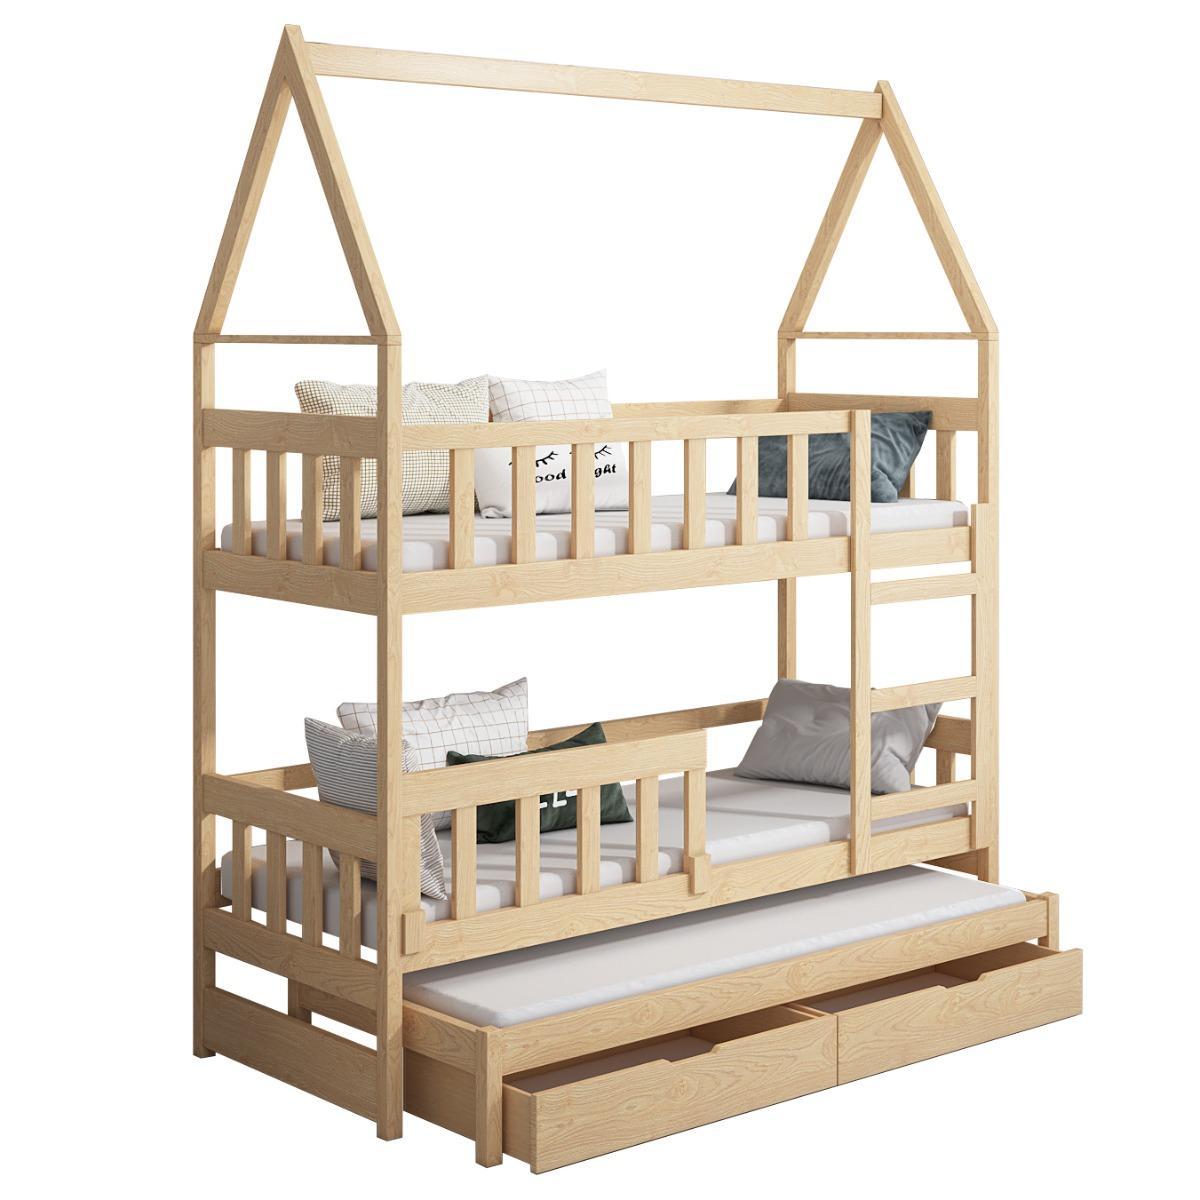 Łóżko piętrowe DOMEK drewno szare miejsce do spania dla 3 osób + materace sprężynowe 180x75 cm + barierka dolna do pokoju dziecka 5 Full Screen